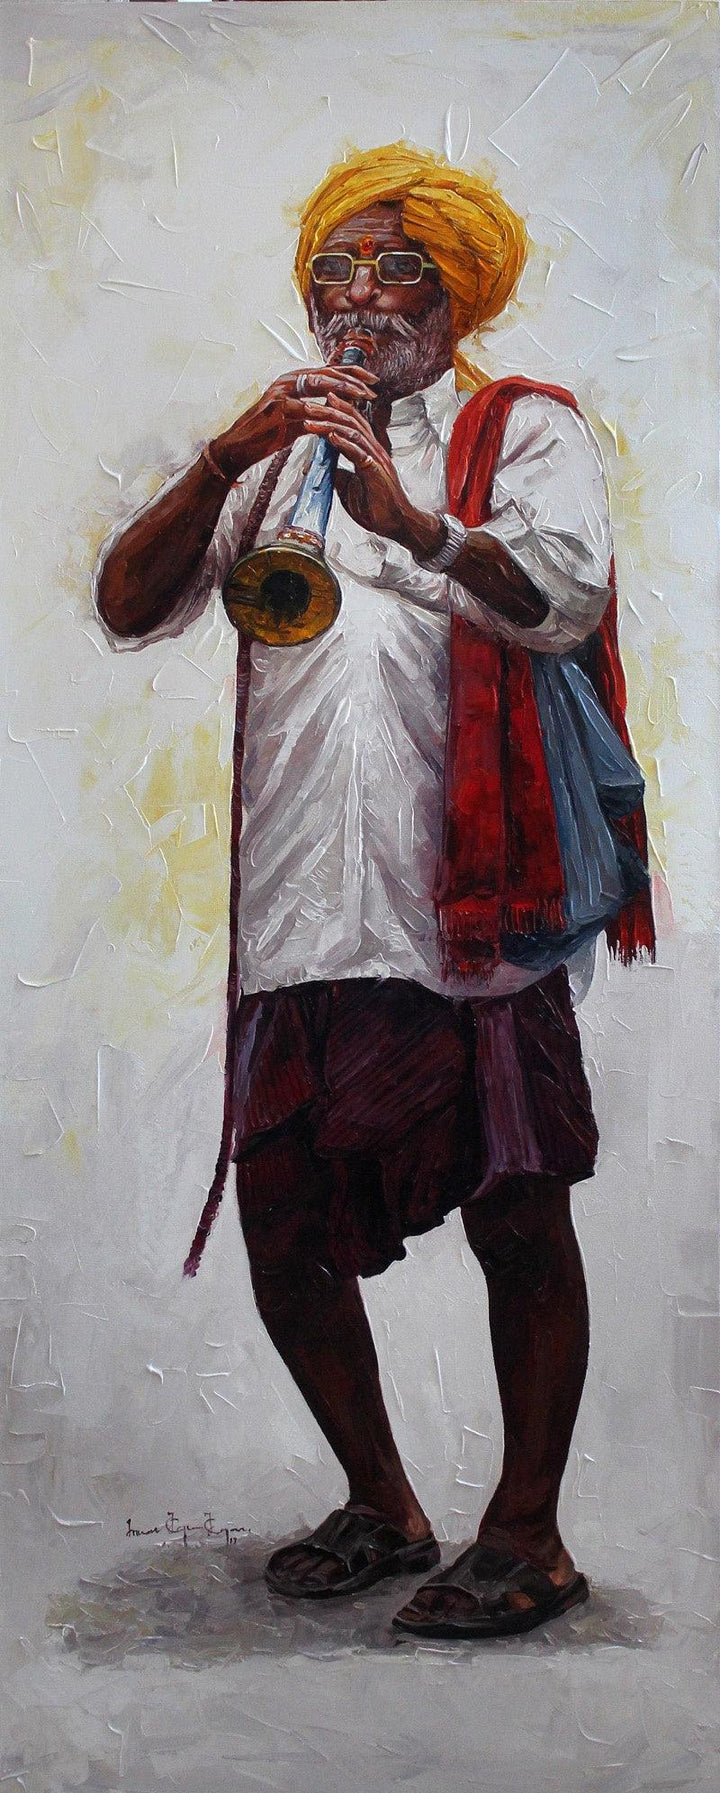 Old Man 2 Painting by Iruvan Karunakaran | ArtZolo.com